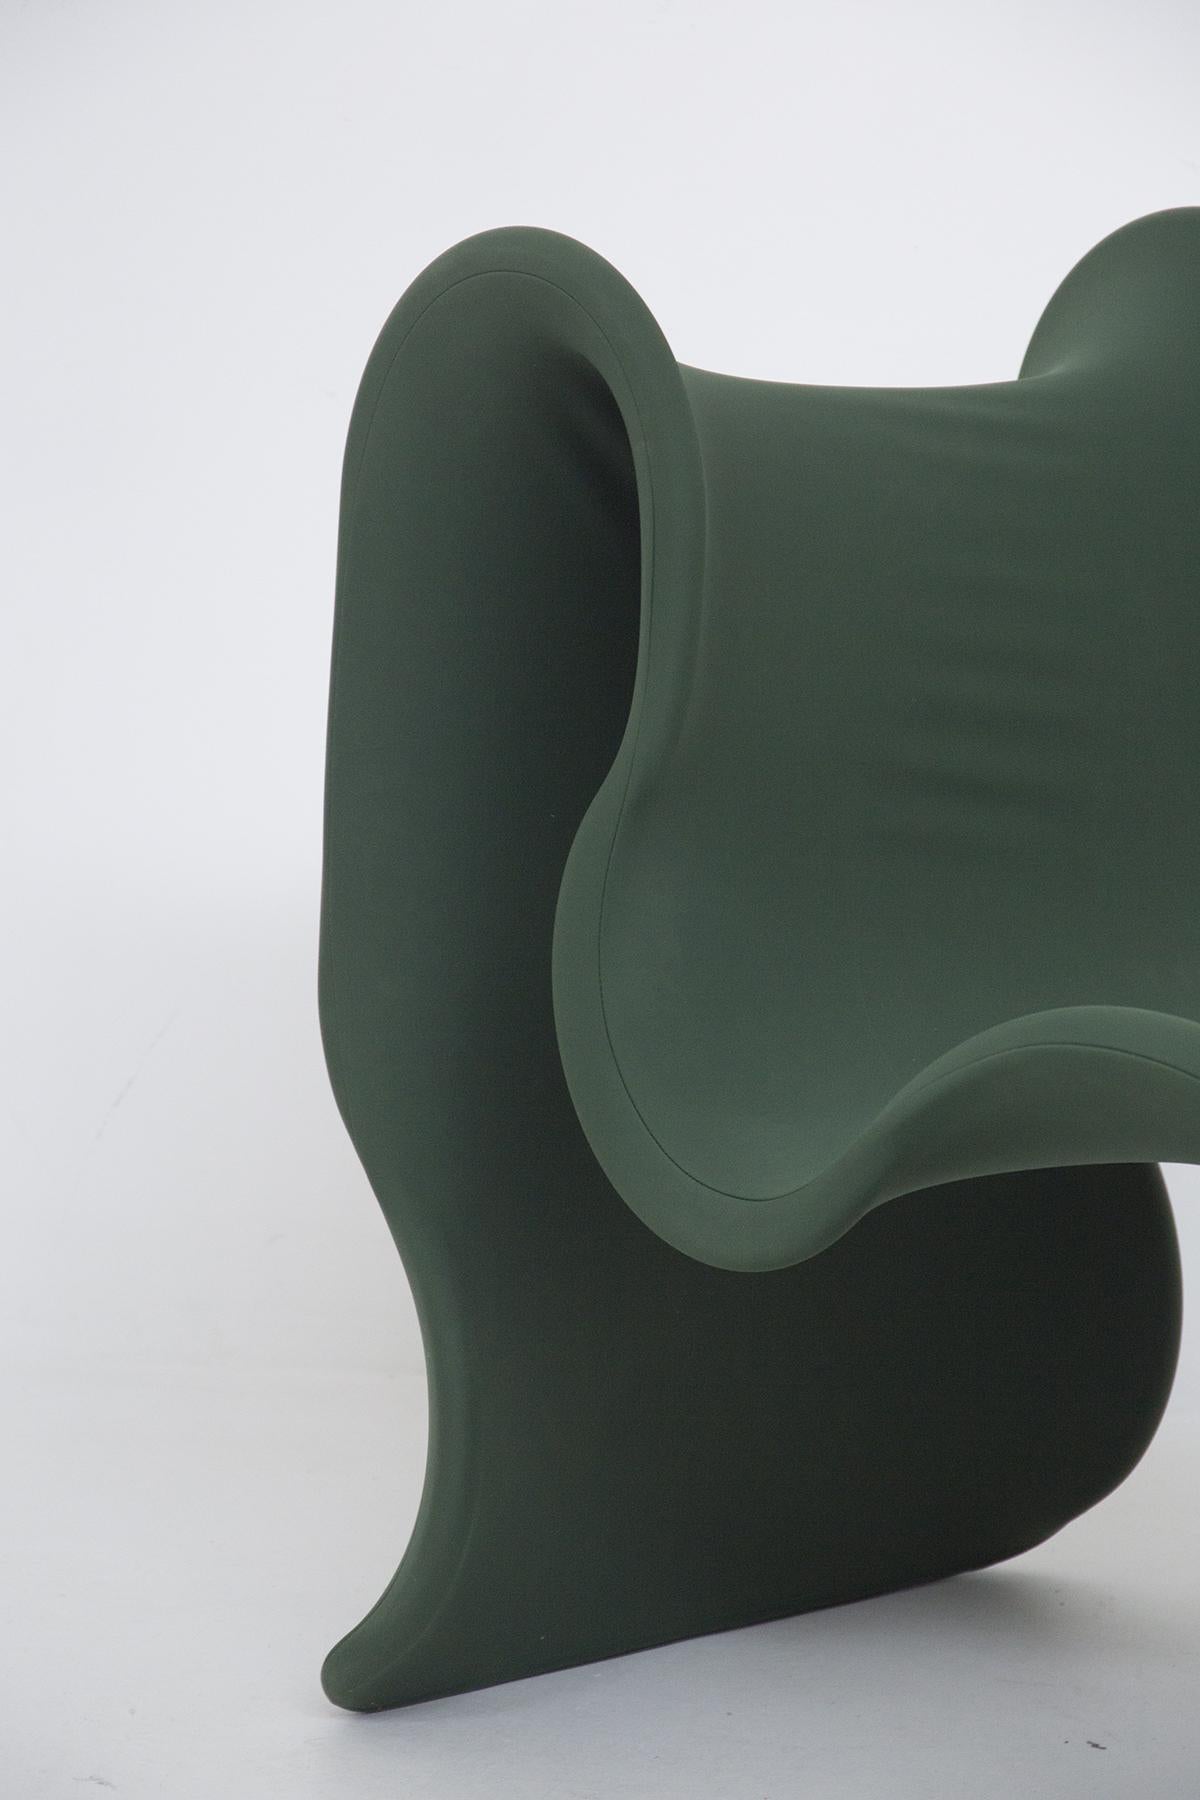 Beau fauteuil Fiocco produit par Busnelli, né en 1970 du projet de Gianni Pareschi.
Il apporte dans le salon la même note de vivacité et de brio qu'un ruban coloré enroulé sur le papier qui enveloppe le précieux cadeau pour une personne qui nous